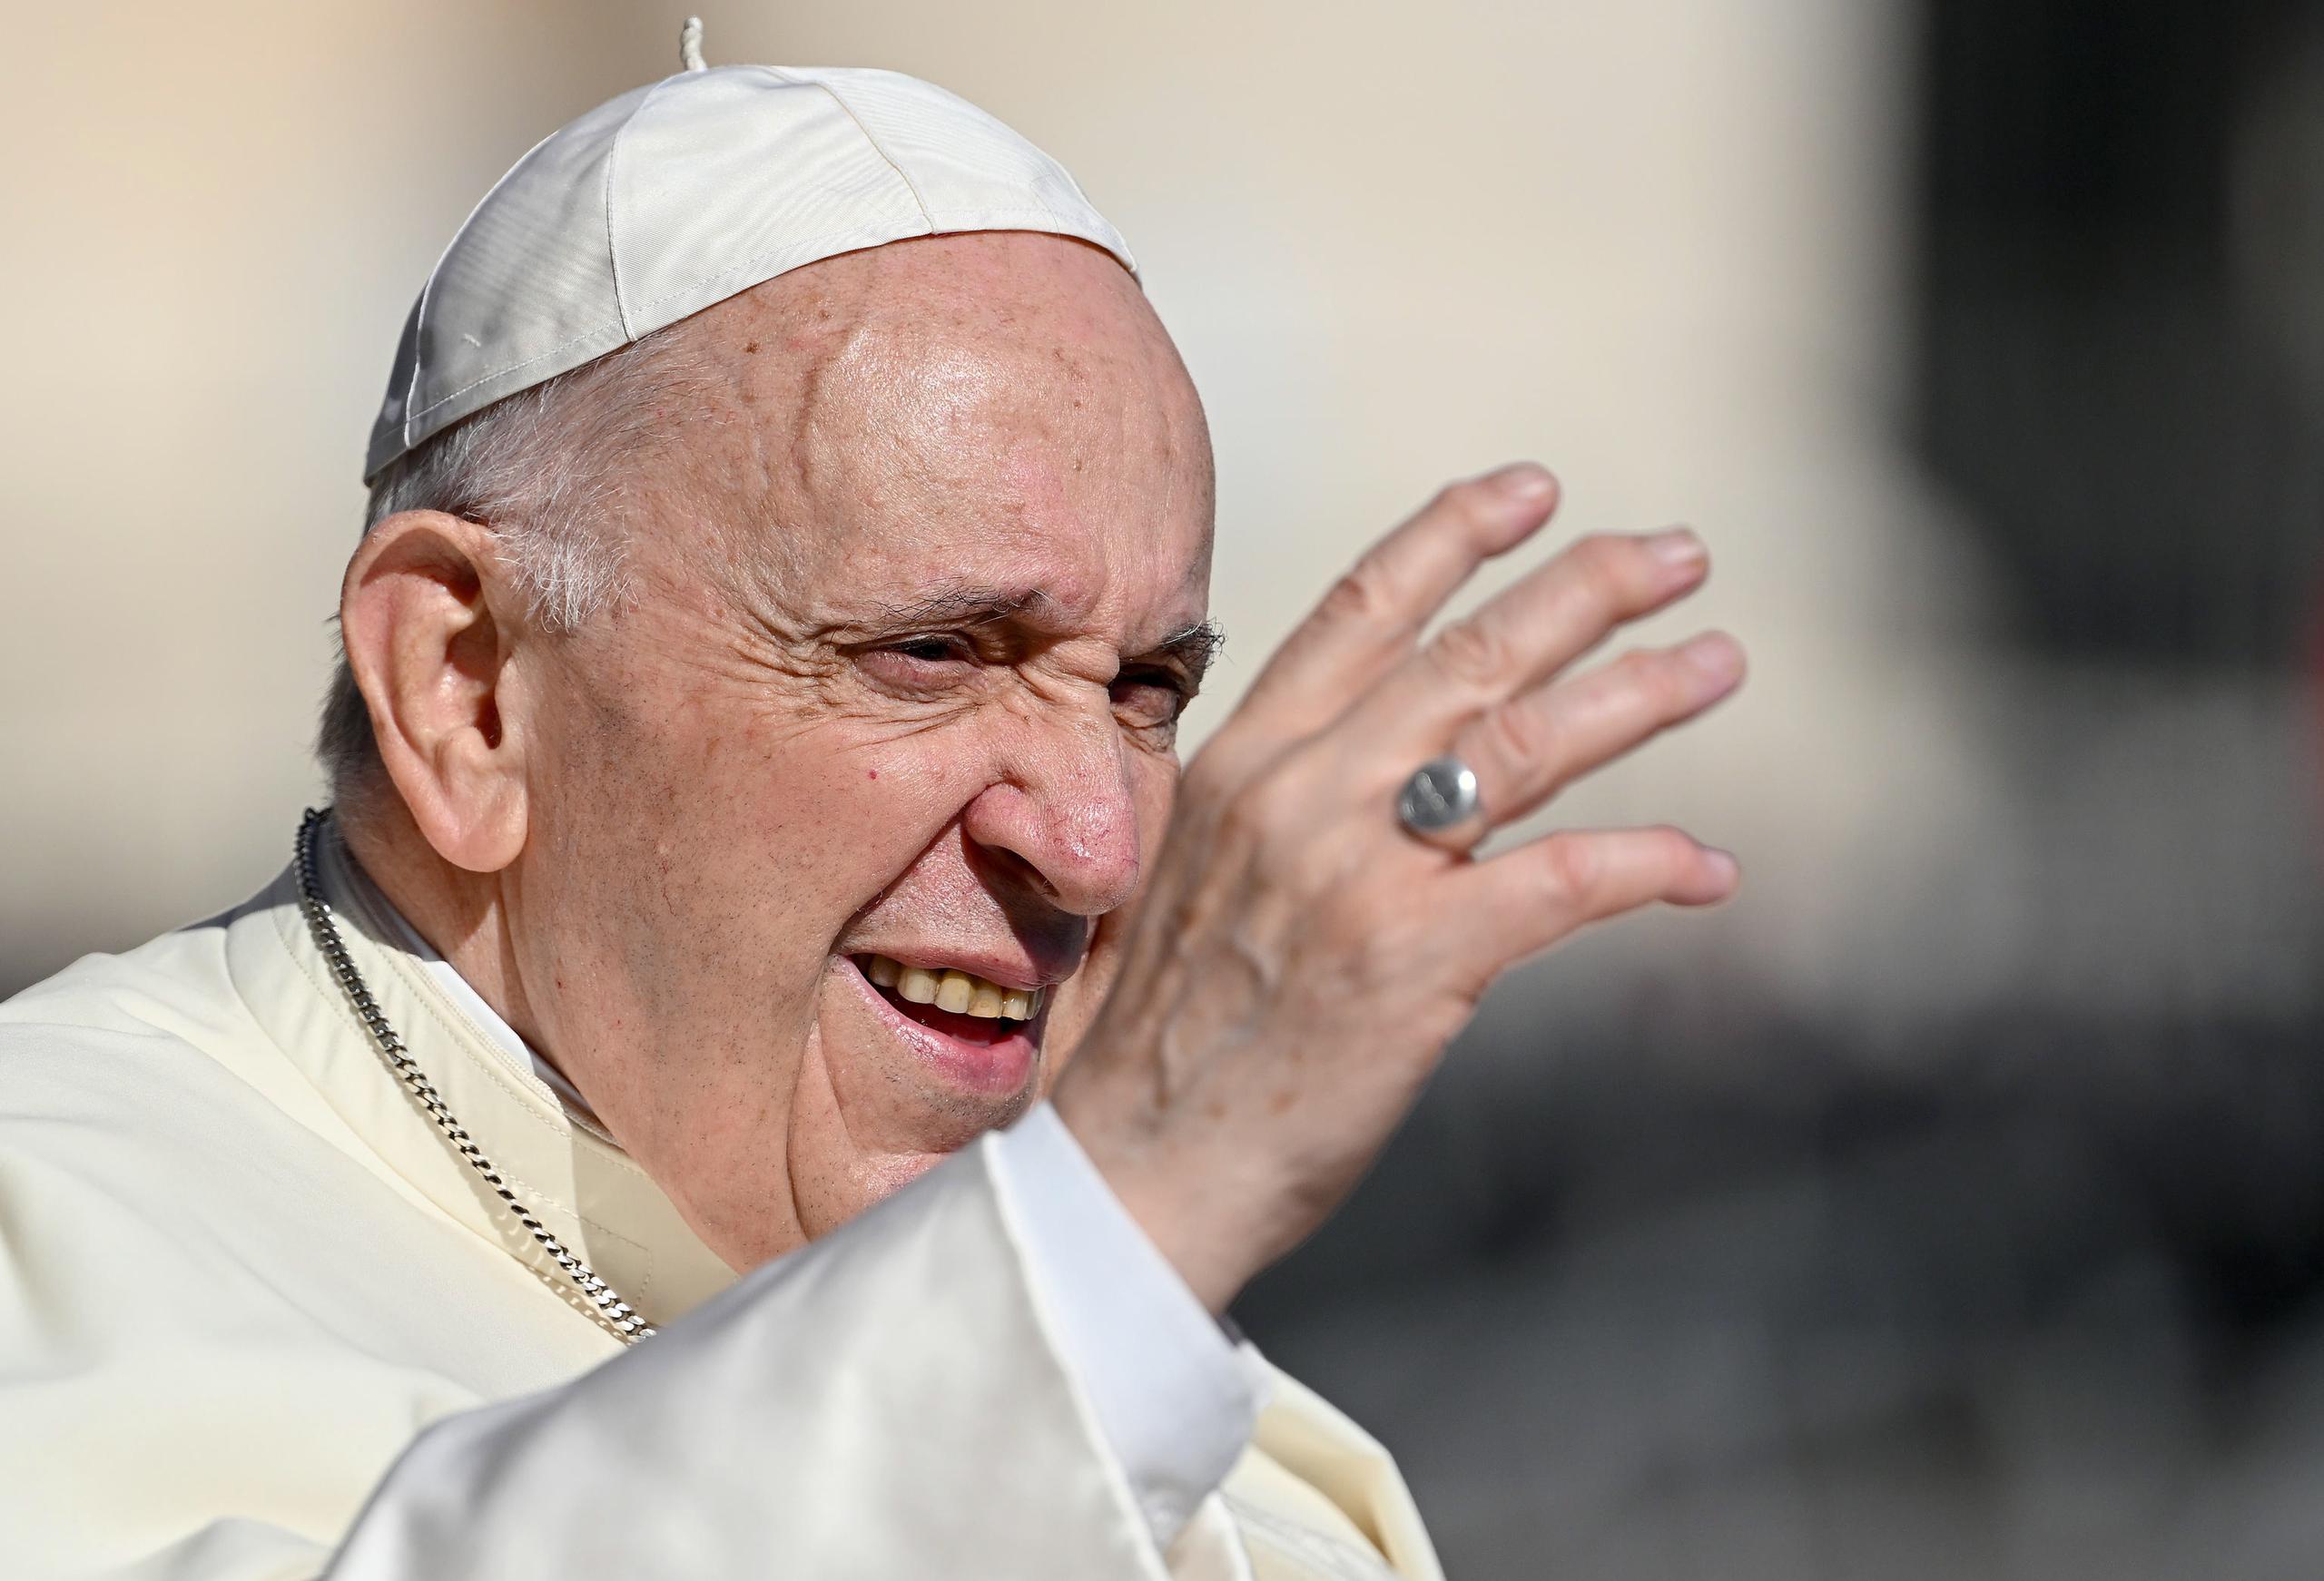 En su juventud, al papa Francisco se le extirpó parte de un pulmón por una infección respiratoria y en 2021 le sacaron un trozo de colon por una inflamación intestinal.